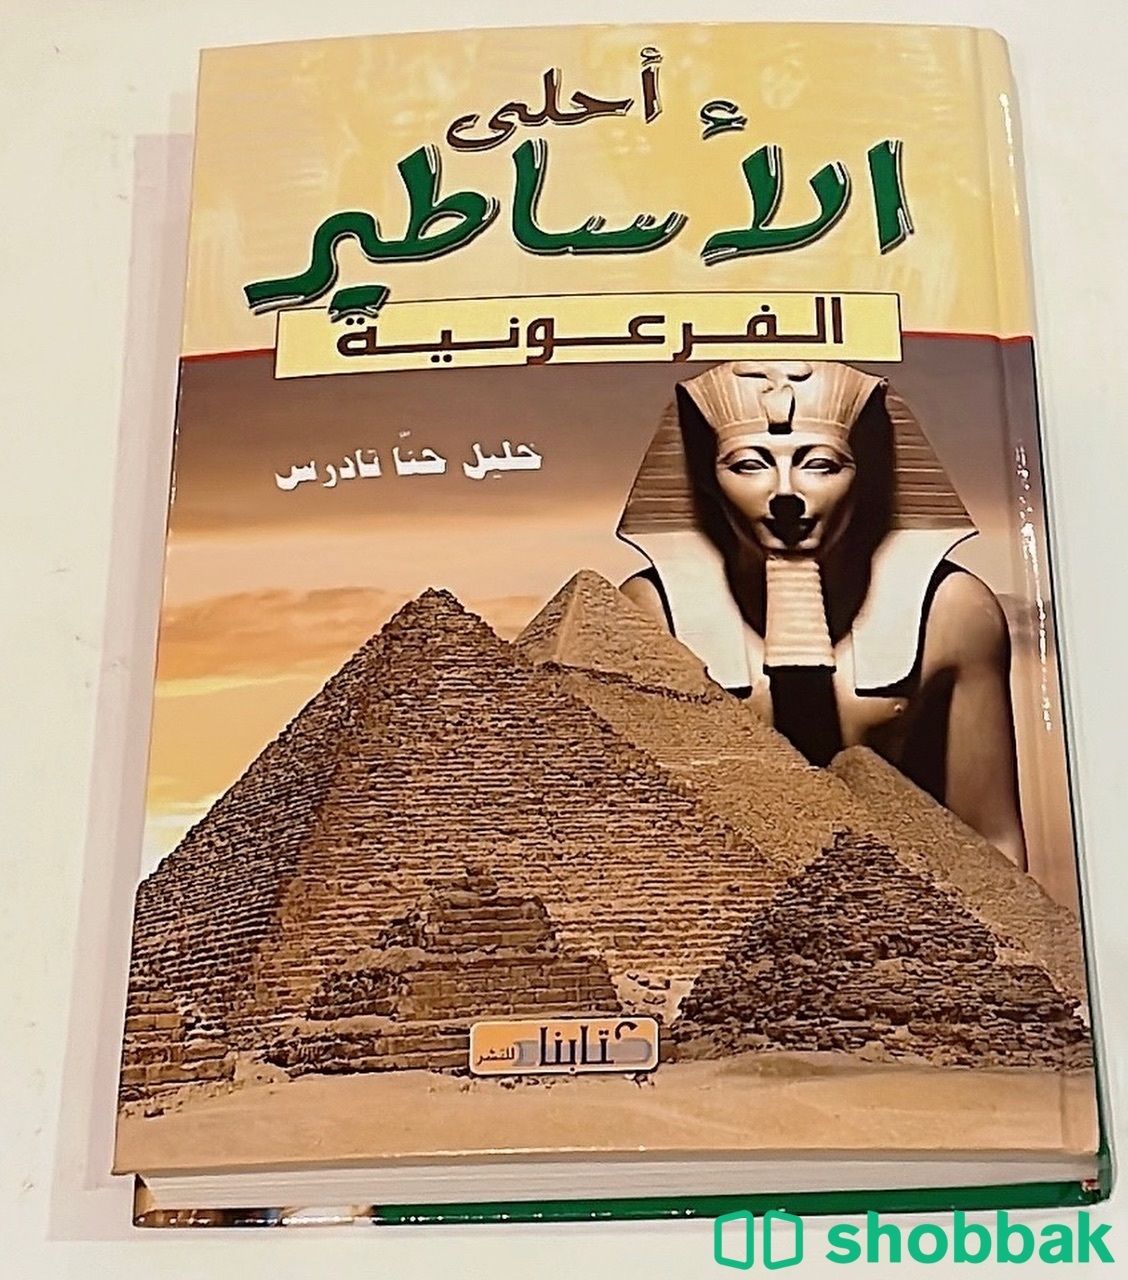 أحلى الأساطير الفرعونية - خليل حنّا تادرس.  Shobbak Saudi Arabia